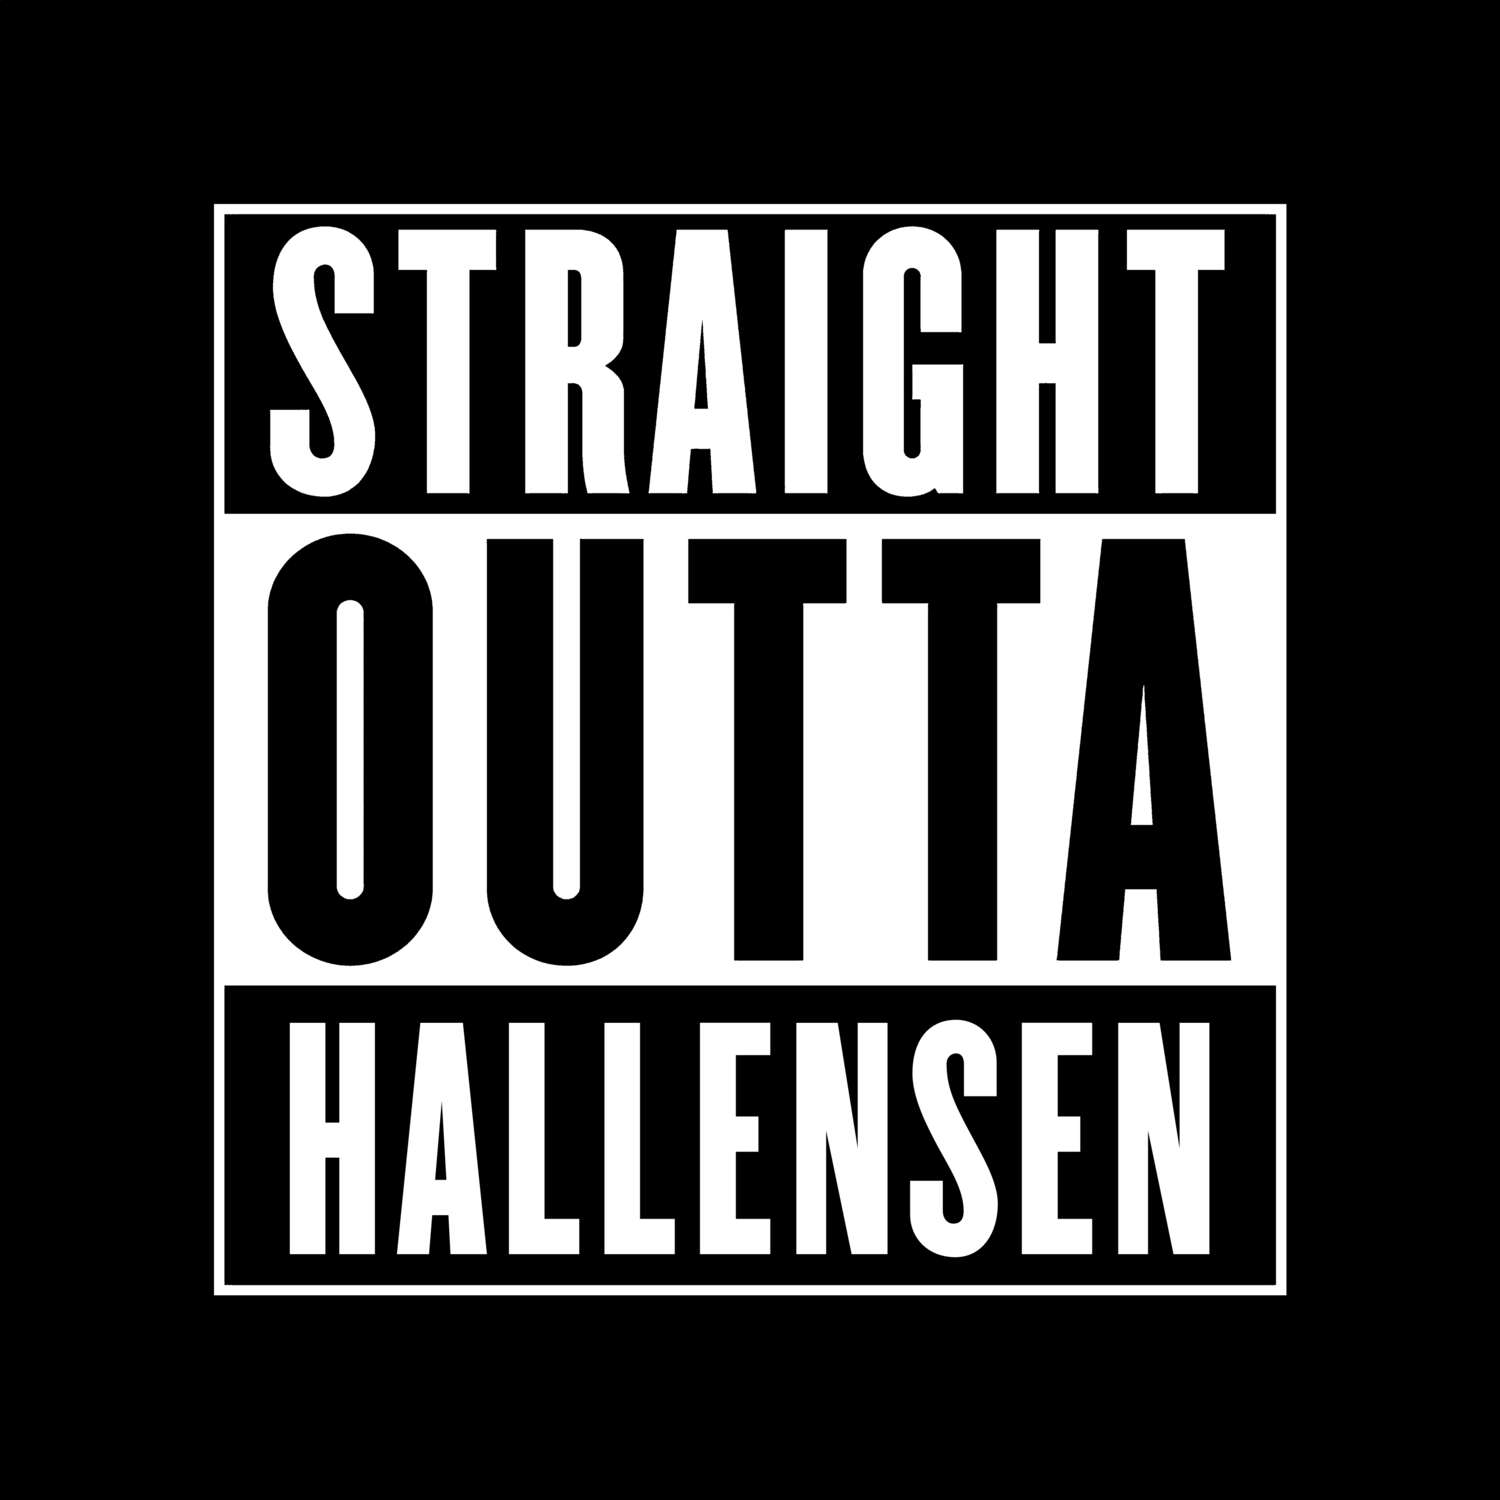 Hallensen T-Shirt »Straight Outta«